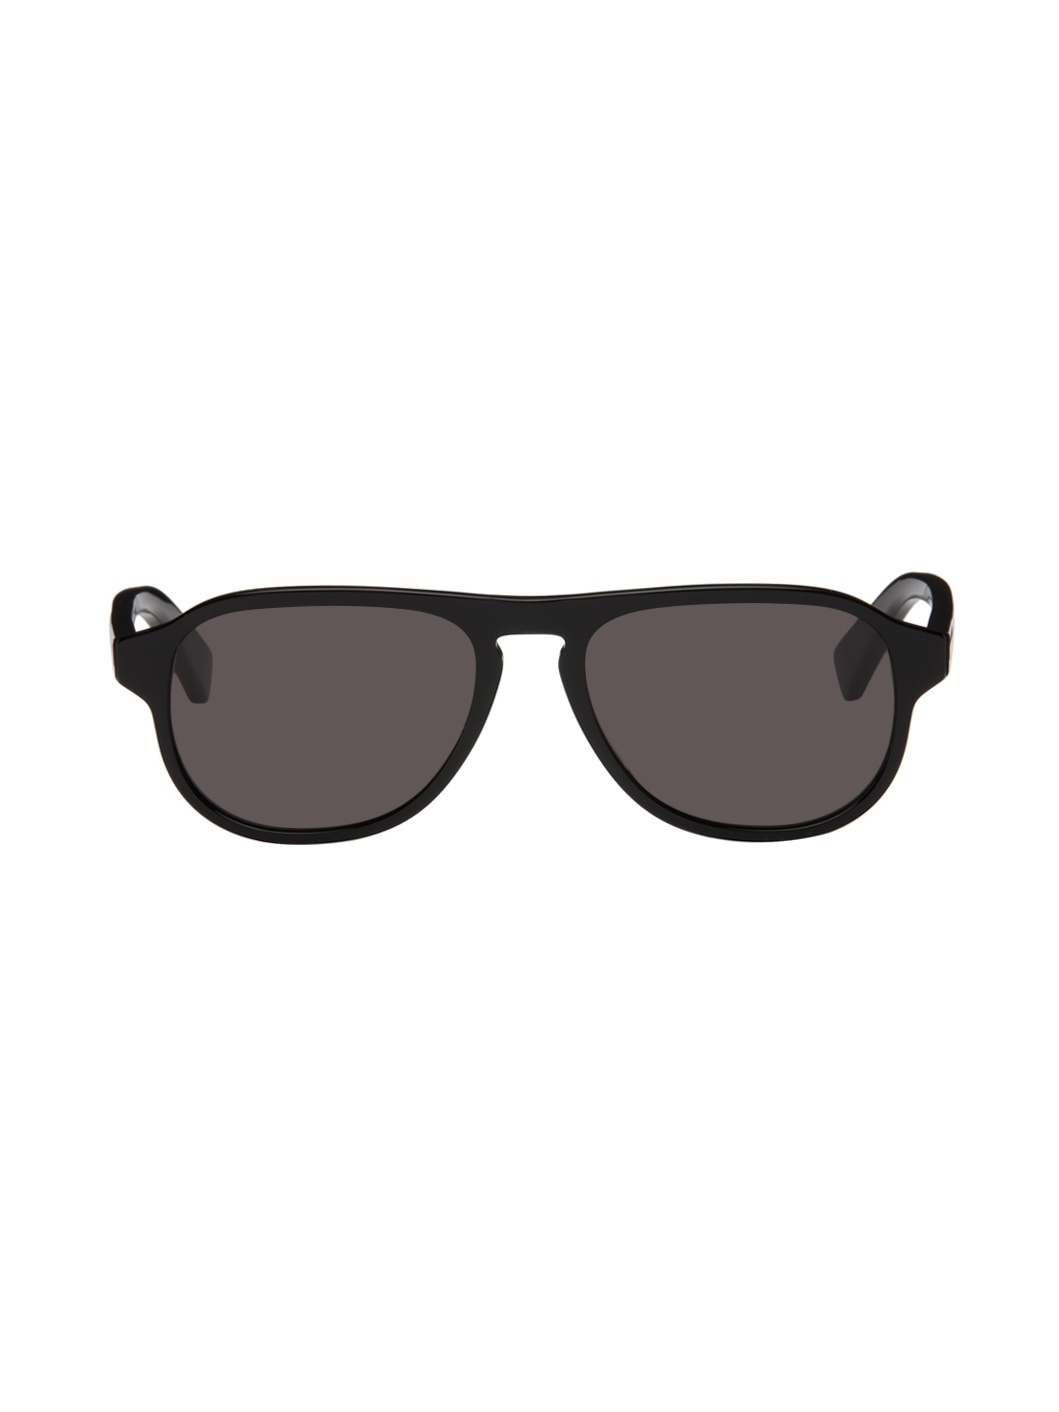 Black Aviator Sunglasses - 1